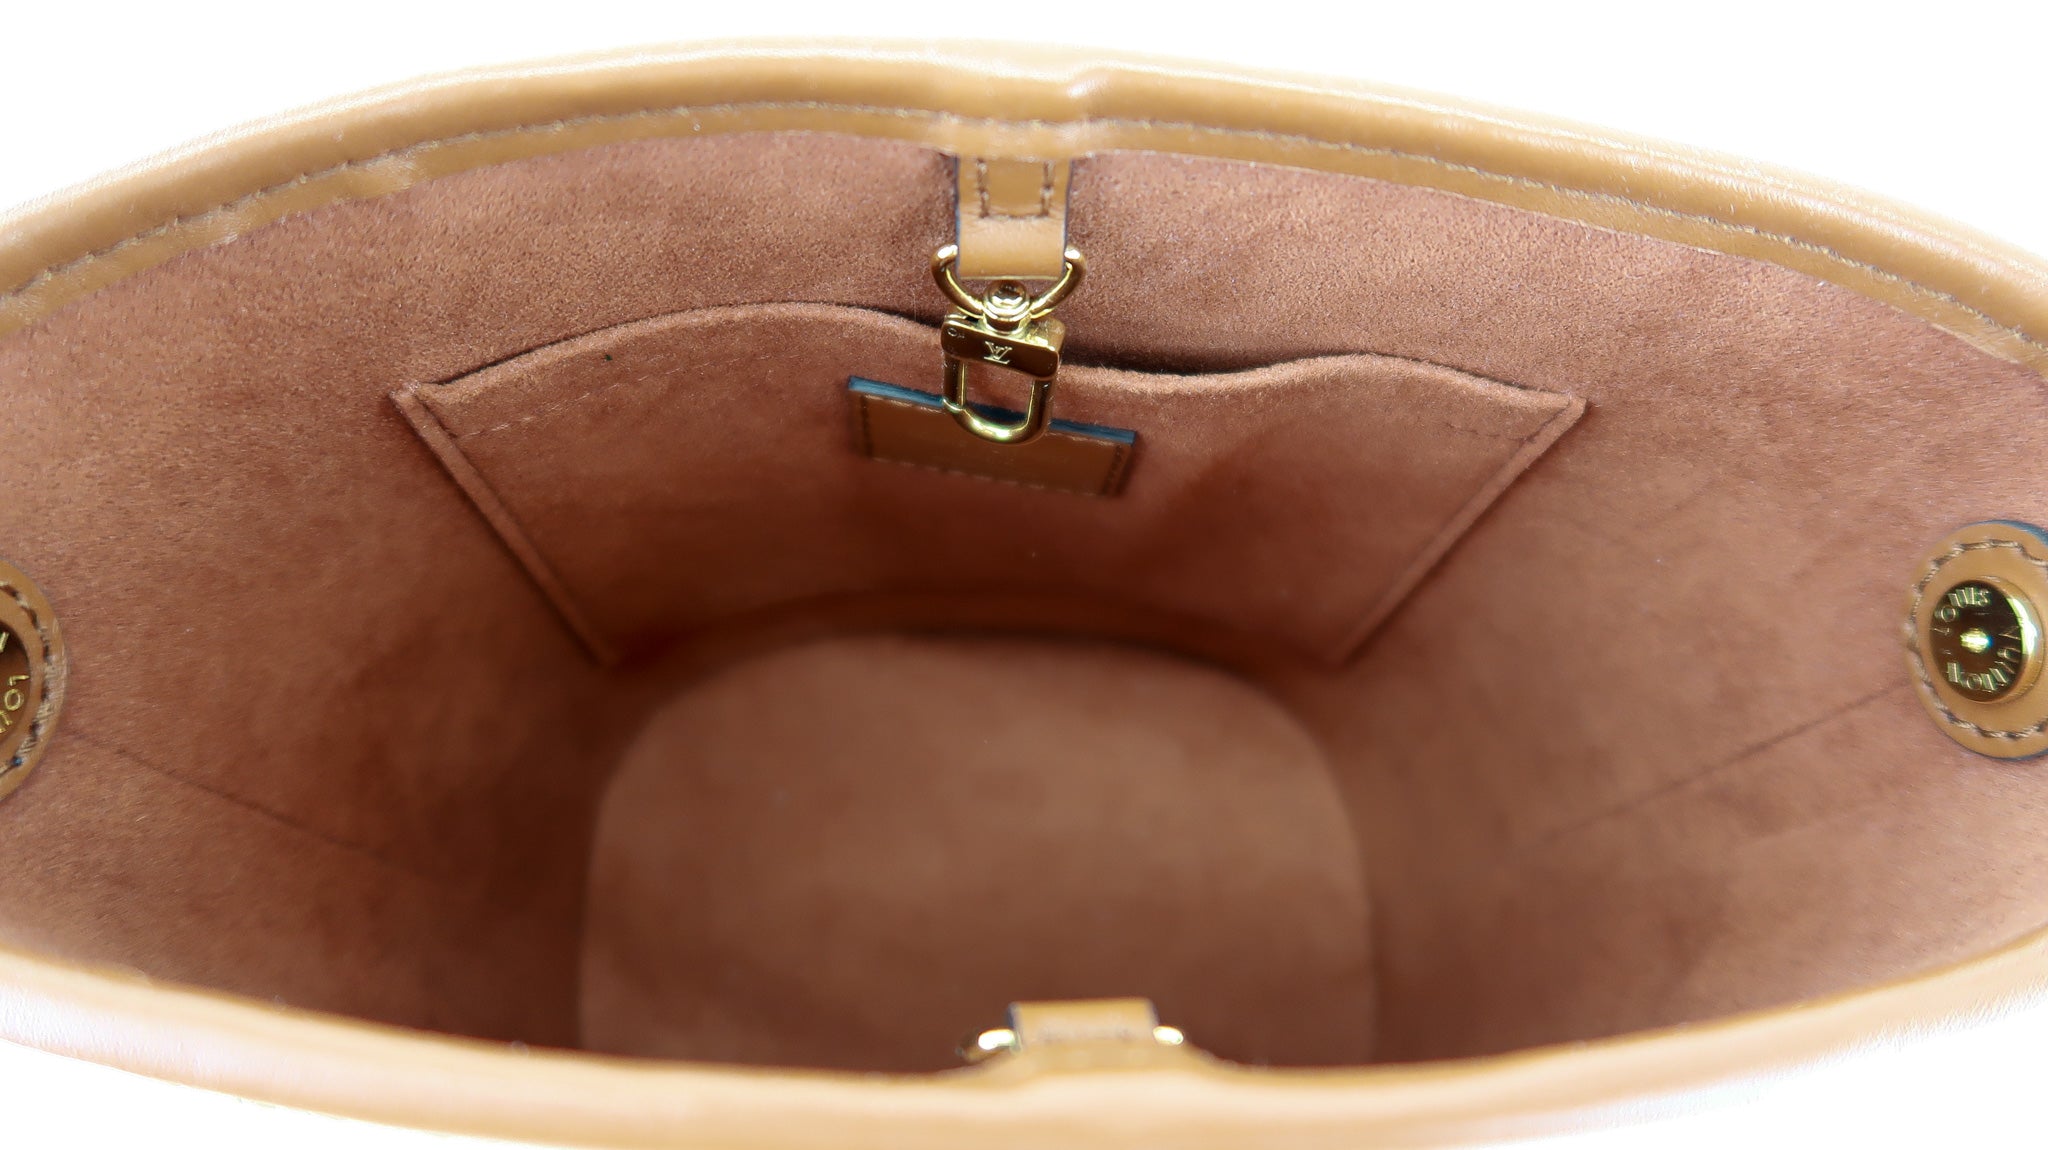 Shopbop Archive Louis Vuitton Raffia Petit Bucket Bag